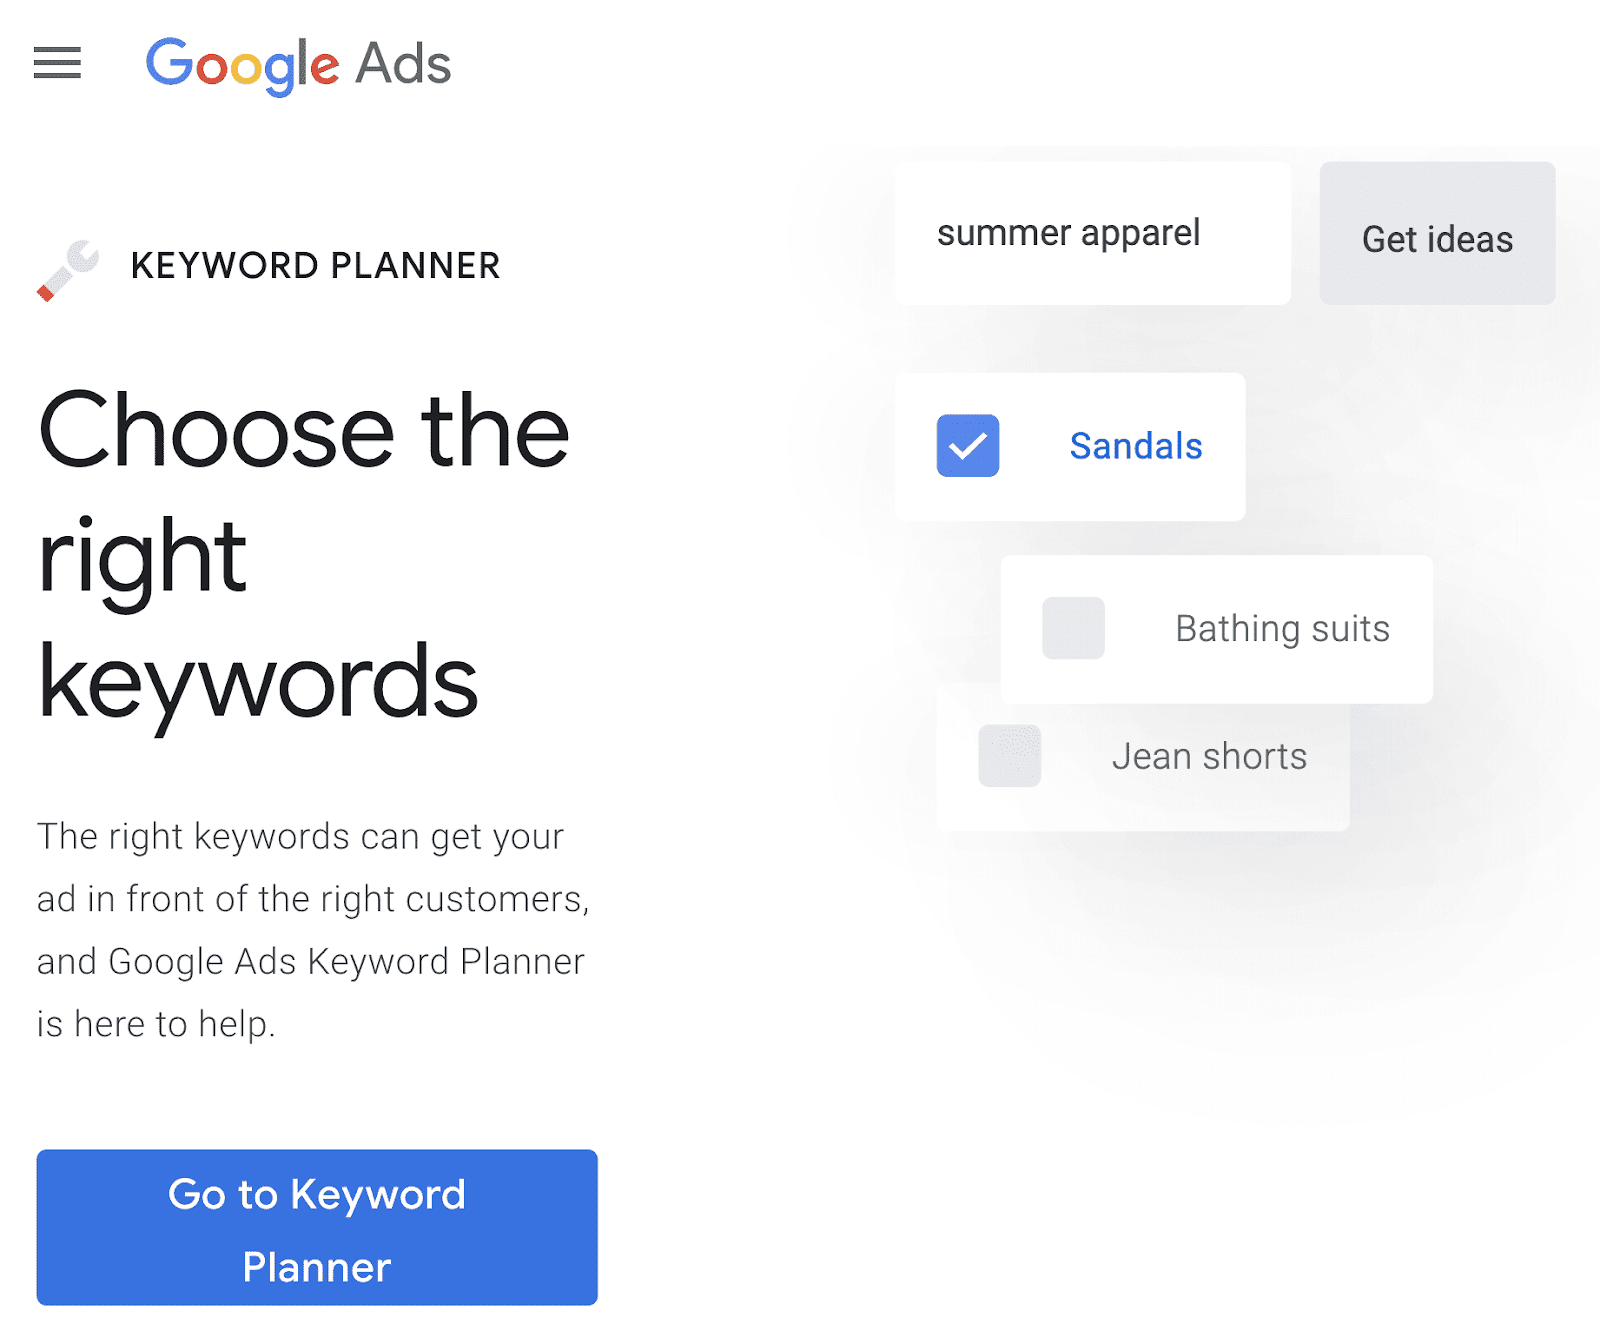 Google Keyword Planner homepage